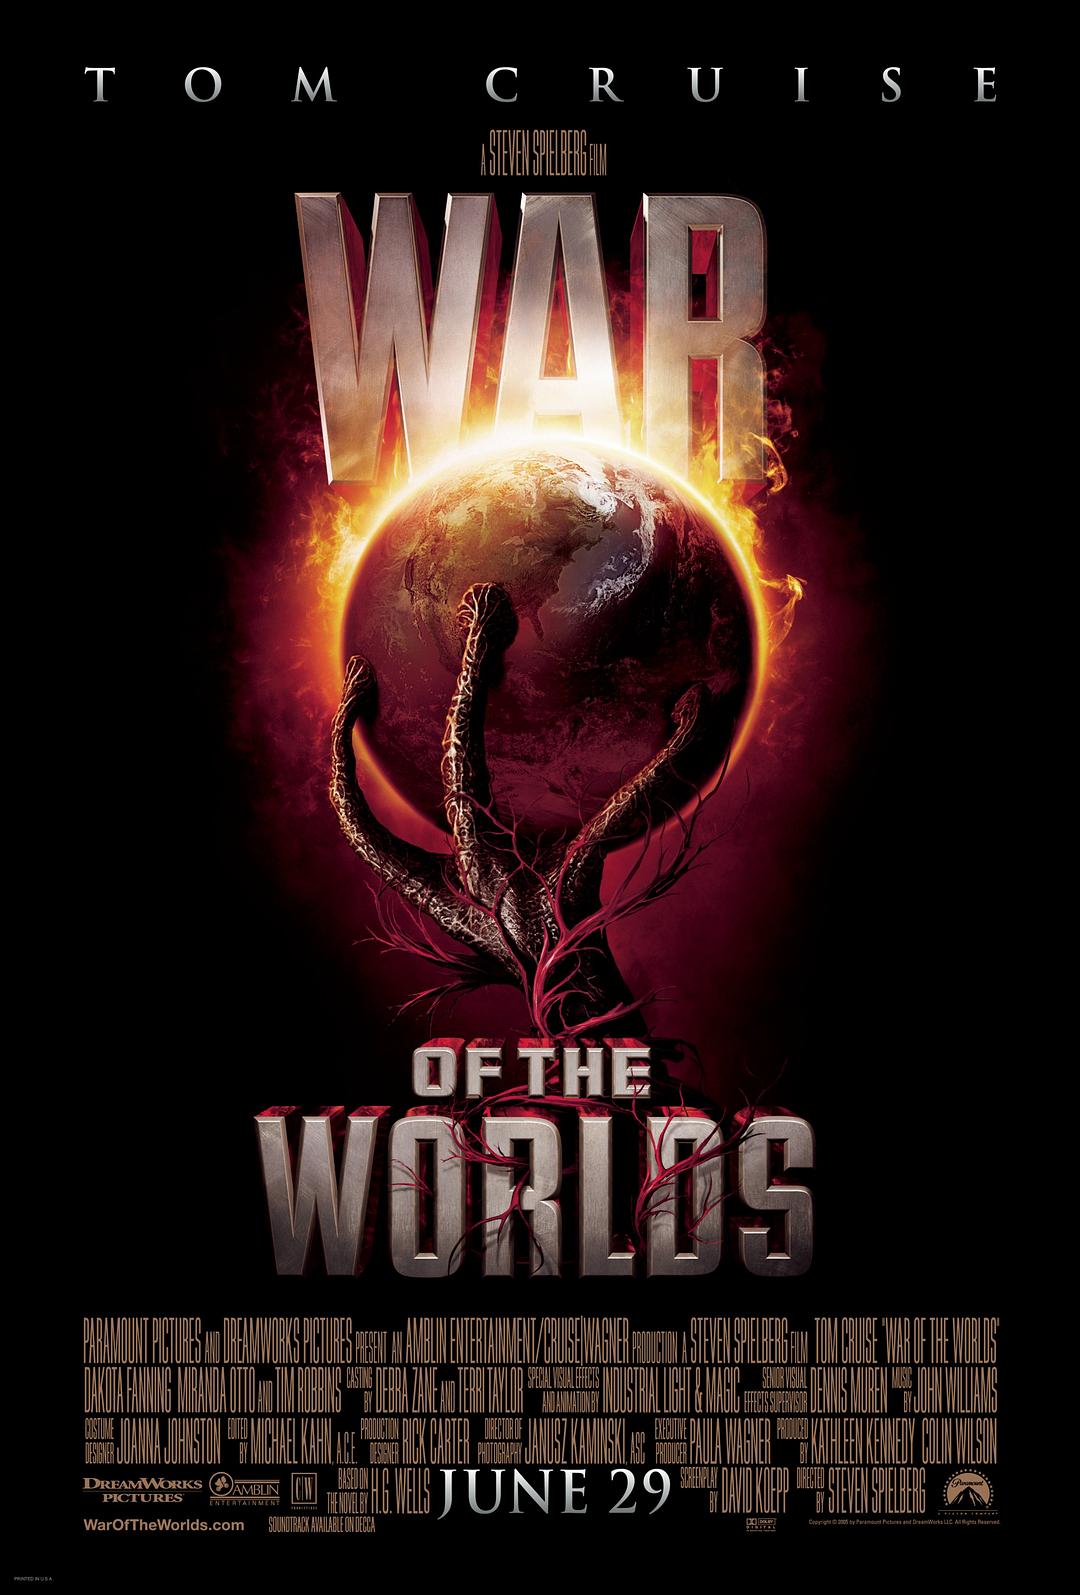 天下之战/天下大战 War.of.the.Worlds.2005.REMASTERED.1080p.BluRay.x264.DTS-HD.MA.7.1-SWTYBLZ 23.54GB-1.png